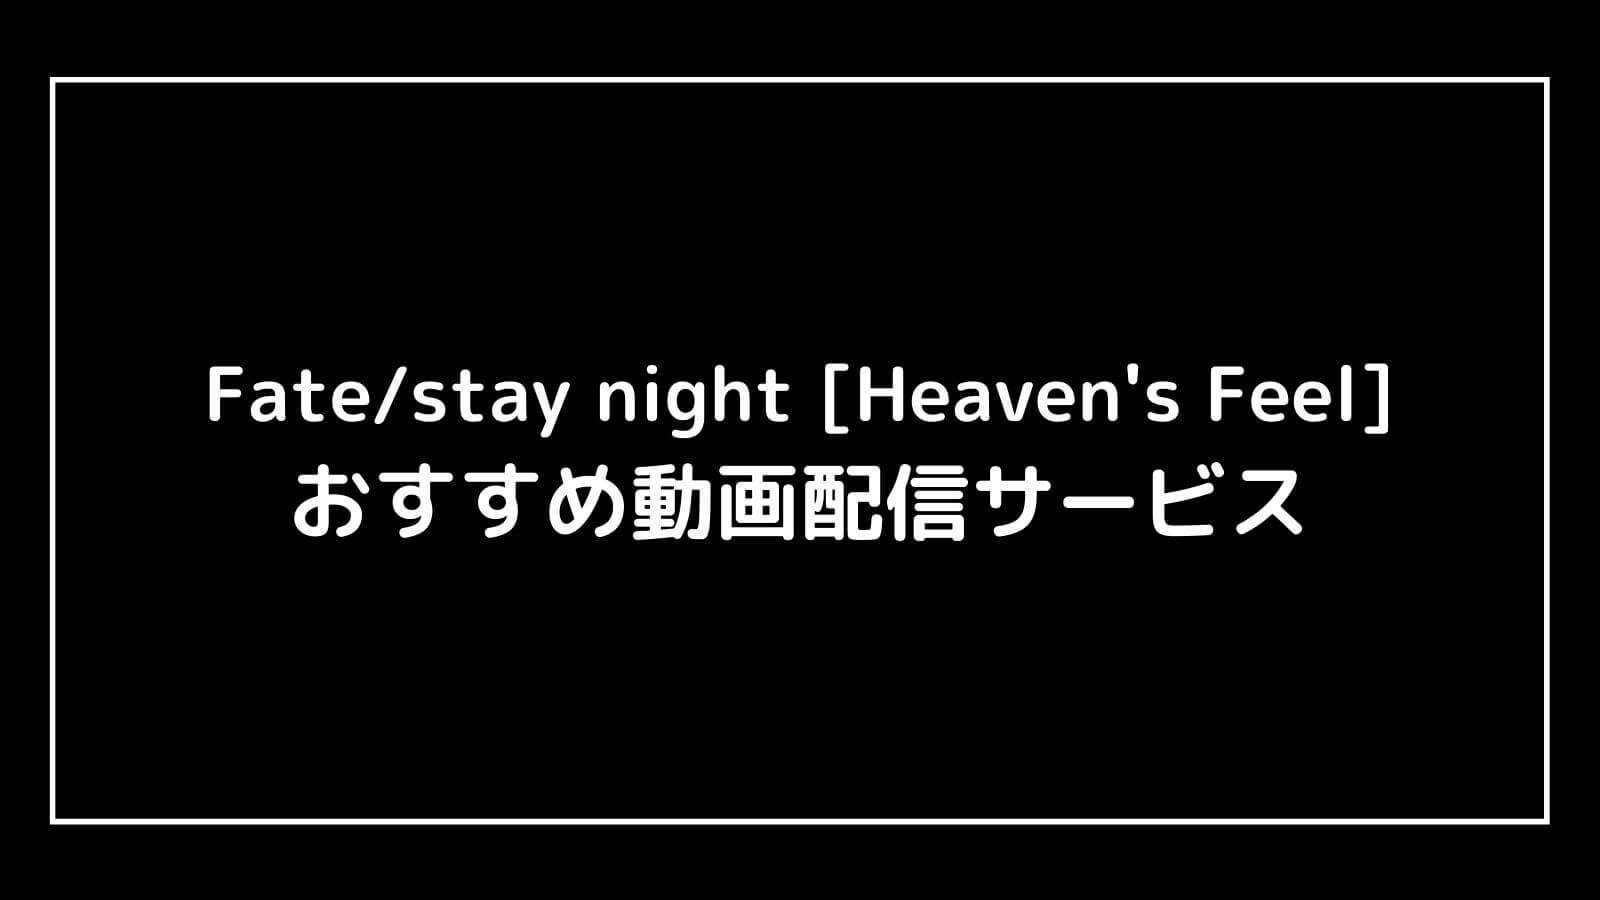 映画『Fate/stay night』全作品を無料視聴できる動画配信サービスまとめ